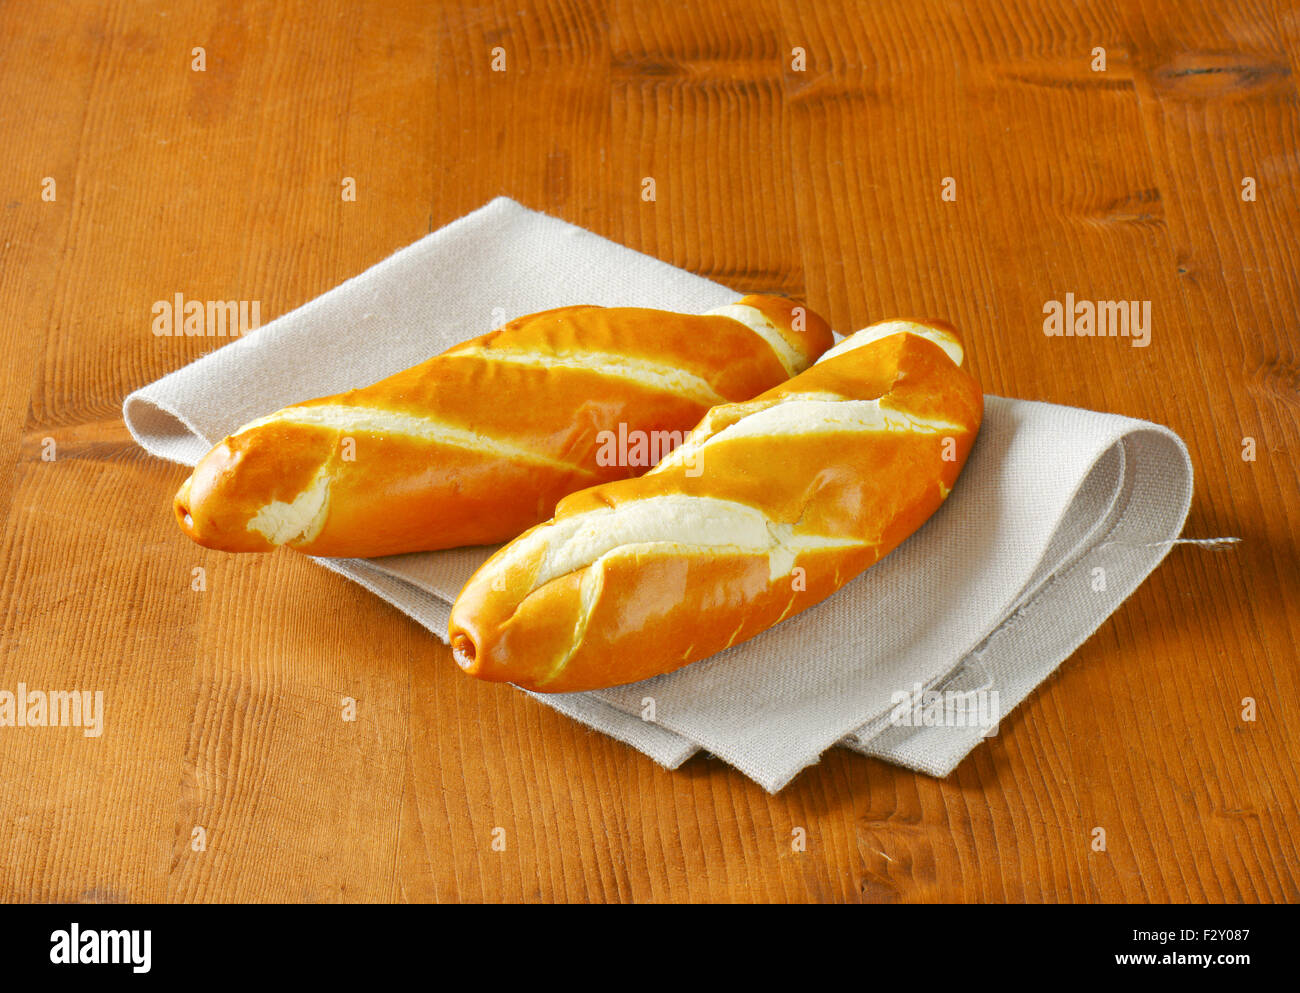 Deux pains avec un tissu , sur la table en bois Banque D'Images